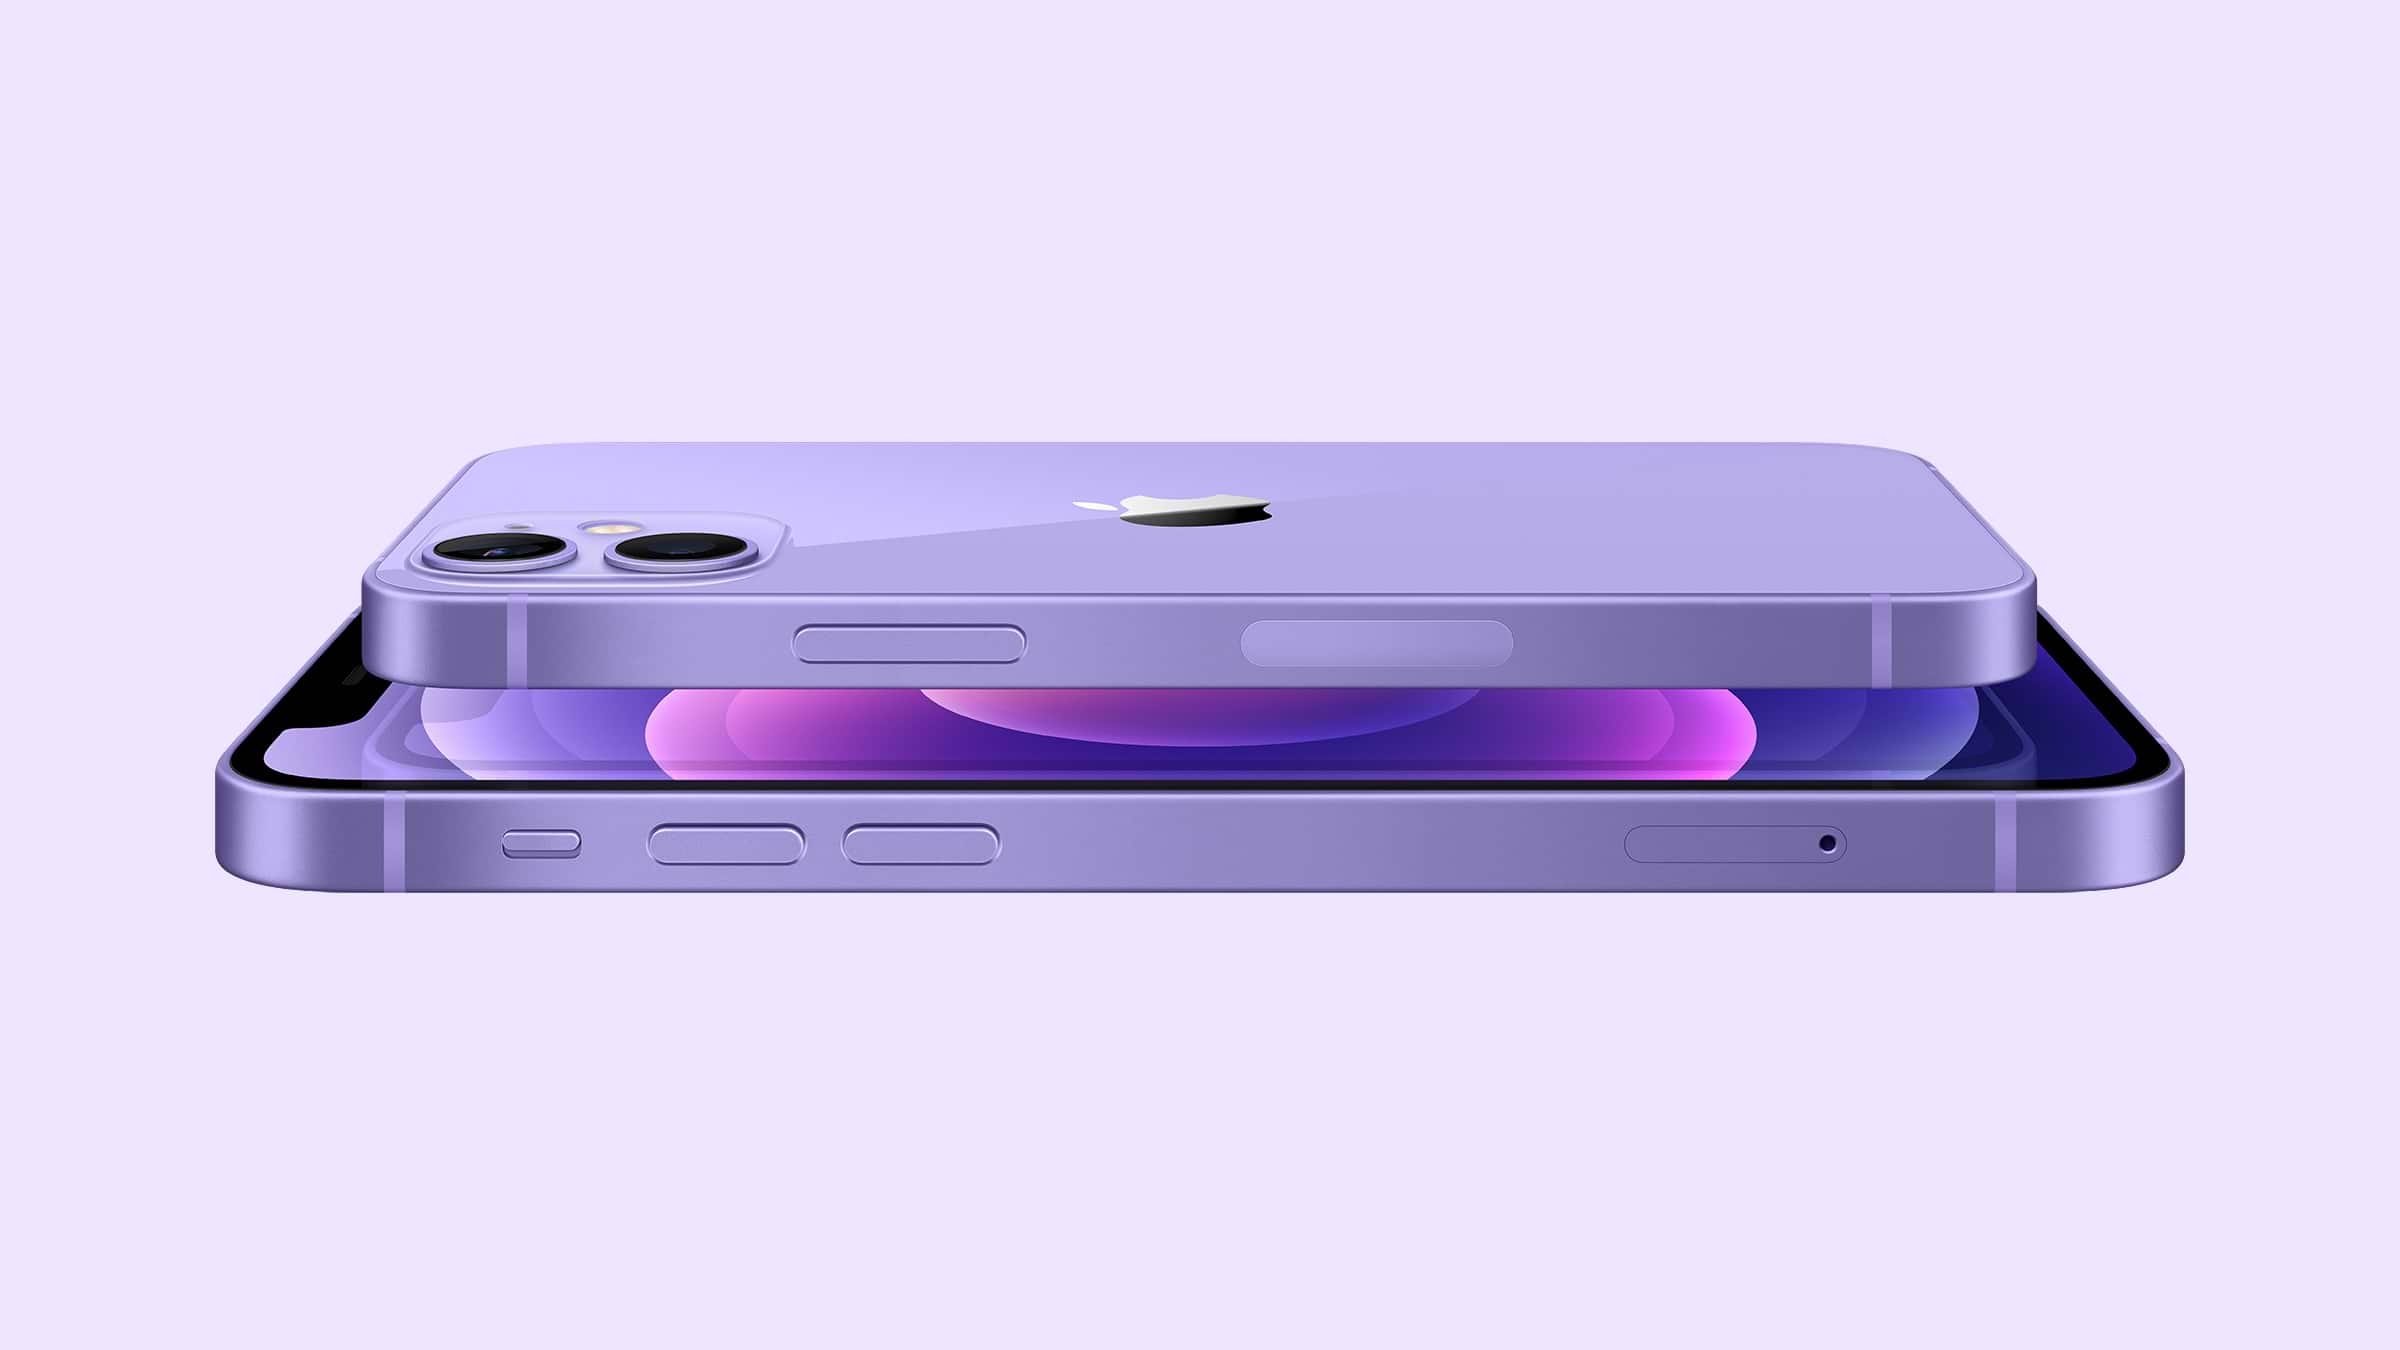 אייפון 12 ואייפון 12 מיני בצבע סגול שוכבים אחד מעל השני פנים אל פנים